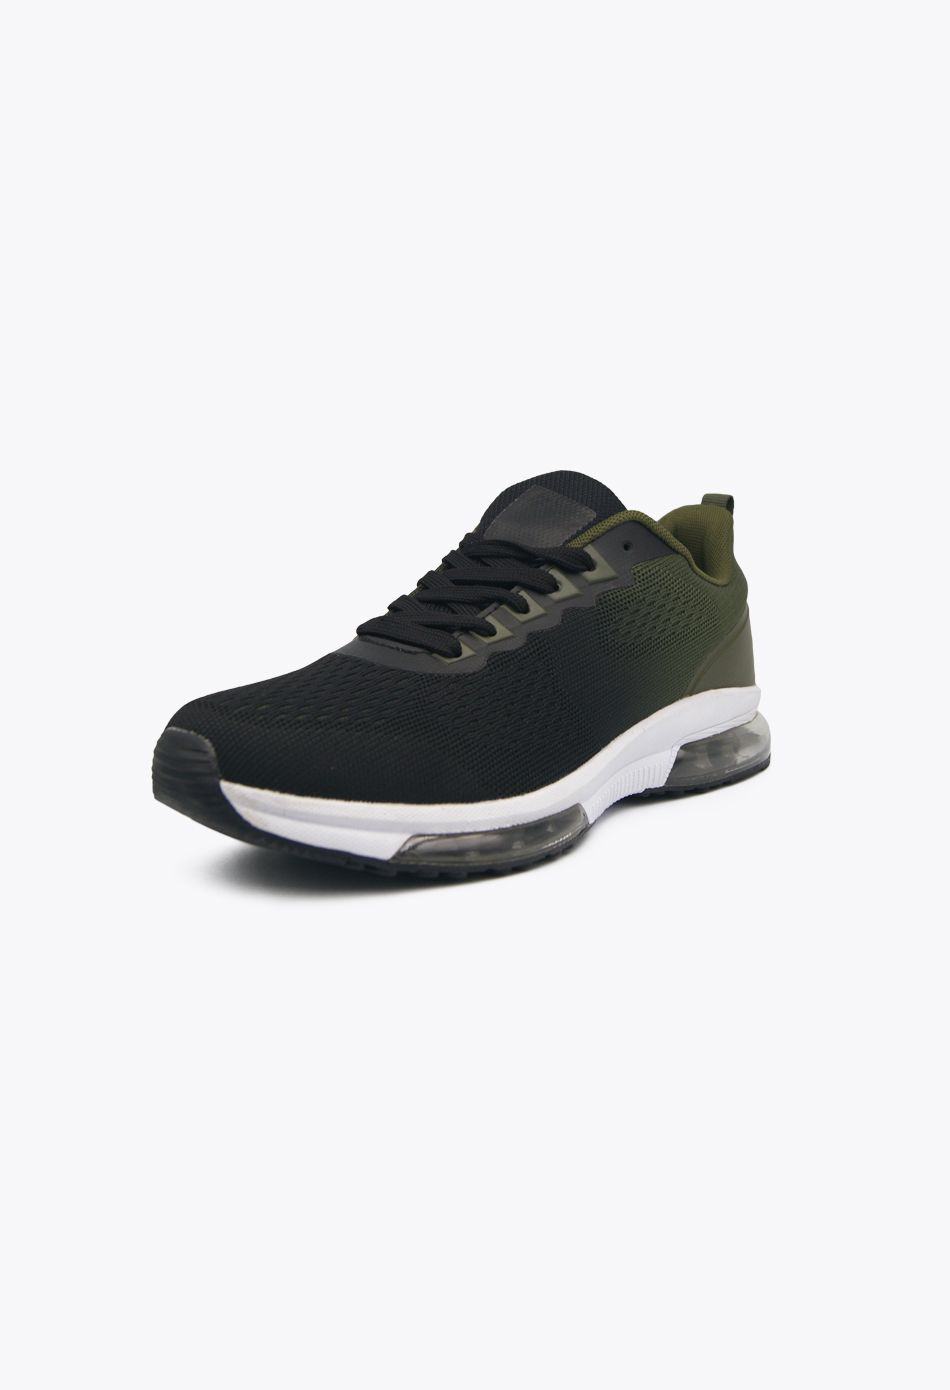 Ανδρικά Αθλητικά Παπούτσια για Τρέξιμο με αεροσόλα Μαύρο / M-6345-black/green ΑΘΛΗΤΙΚΑ & SNEAKERS joya.gr